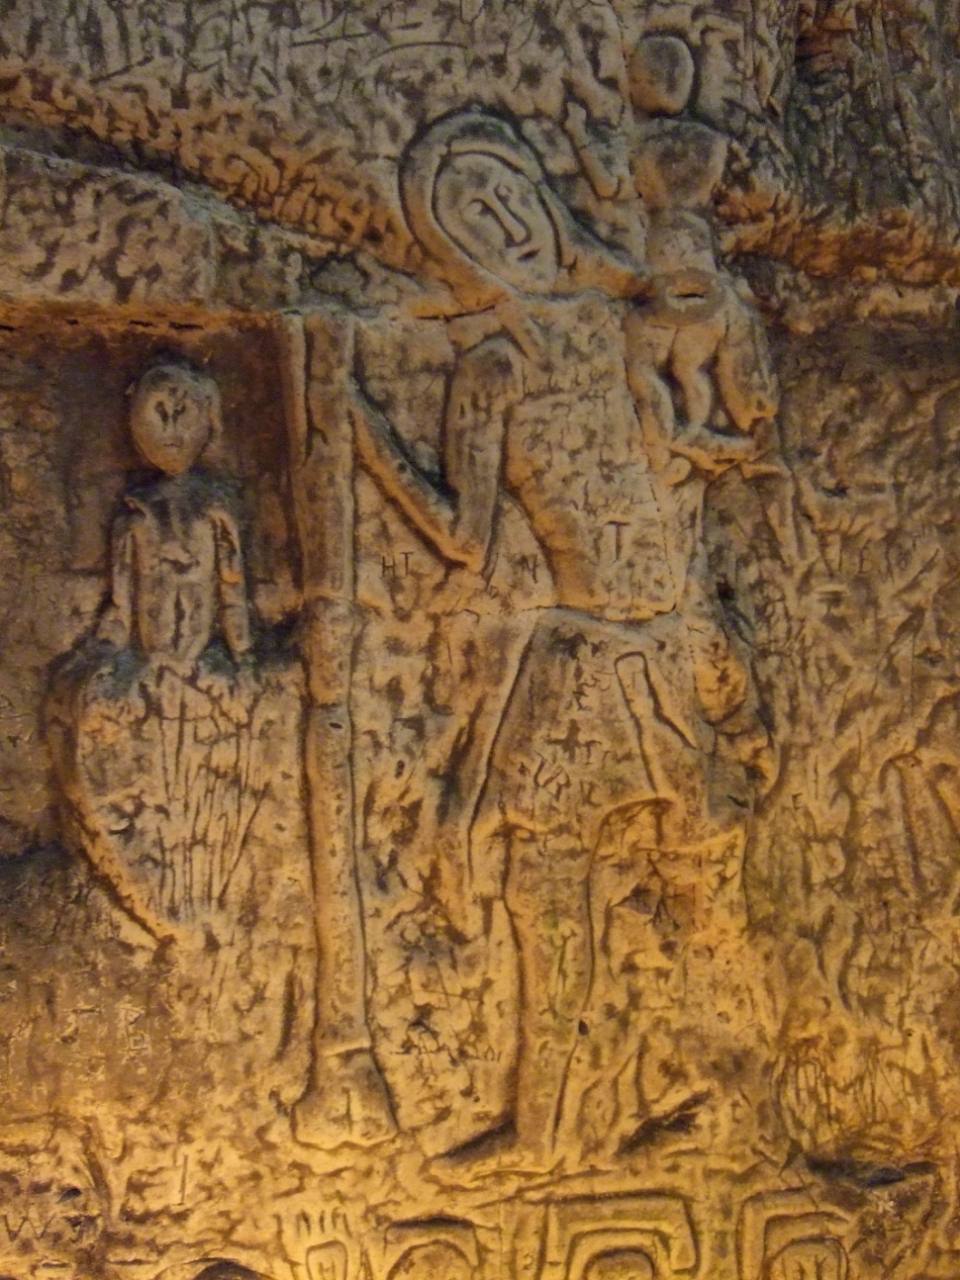 İnsan yapımı Royston Mağarası 3'deki gizemli semboller ve oymalar